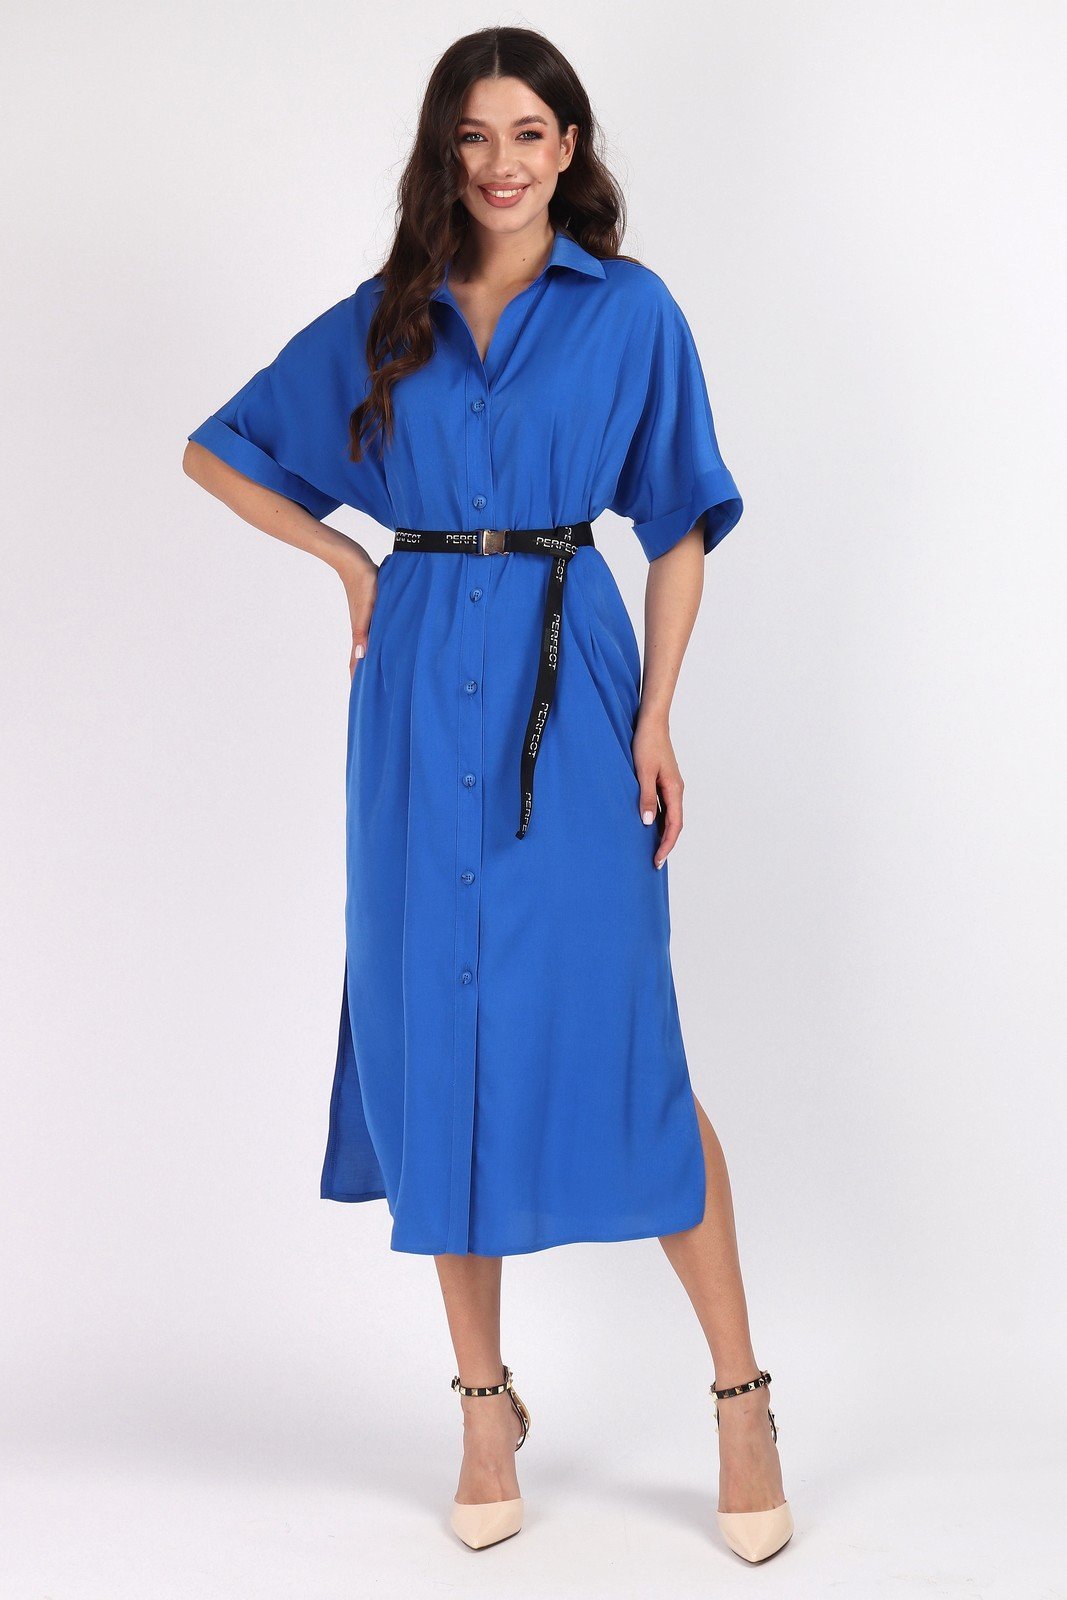 Платье 1460-1 Mia-Moda купить в интернет магазине | в наличии